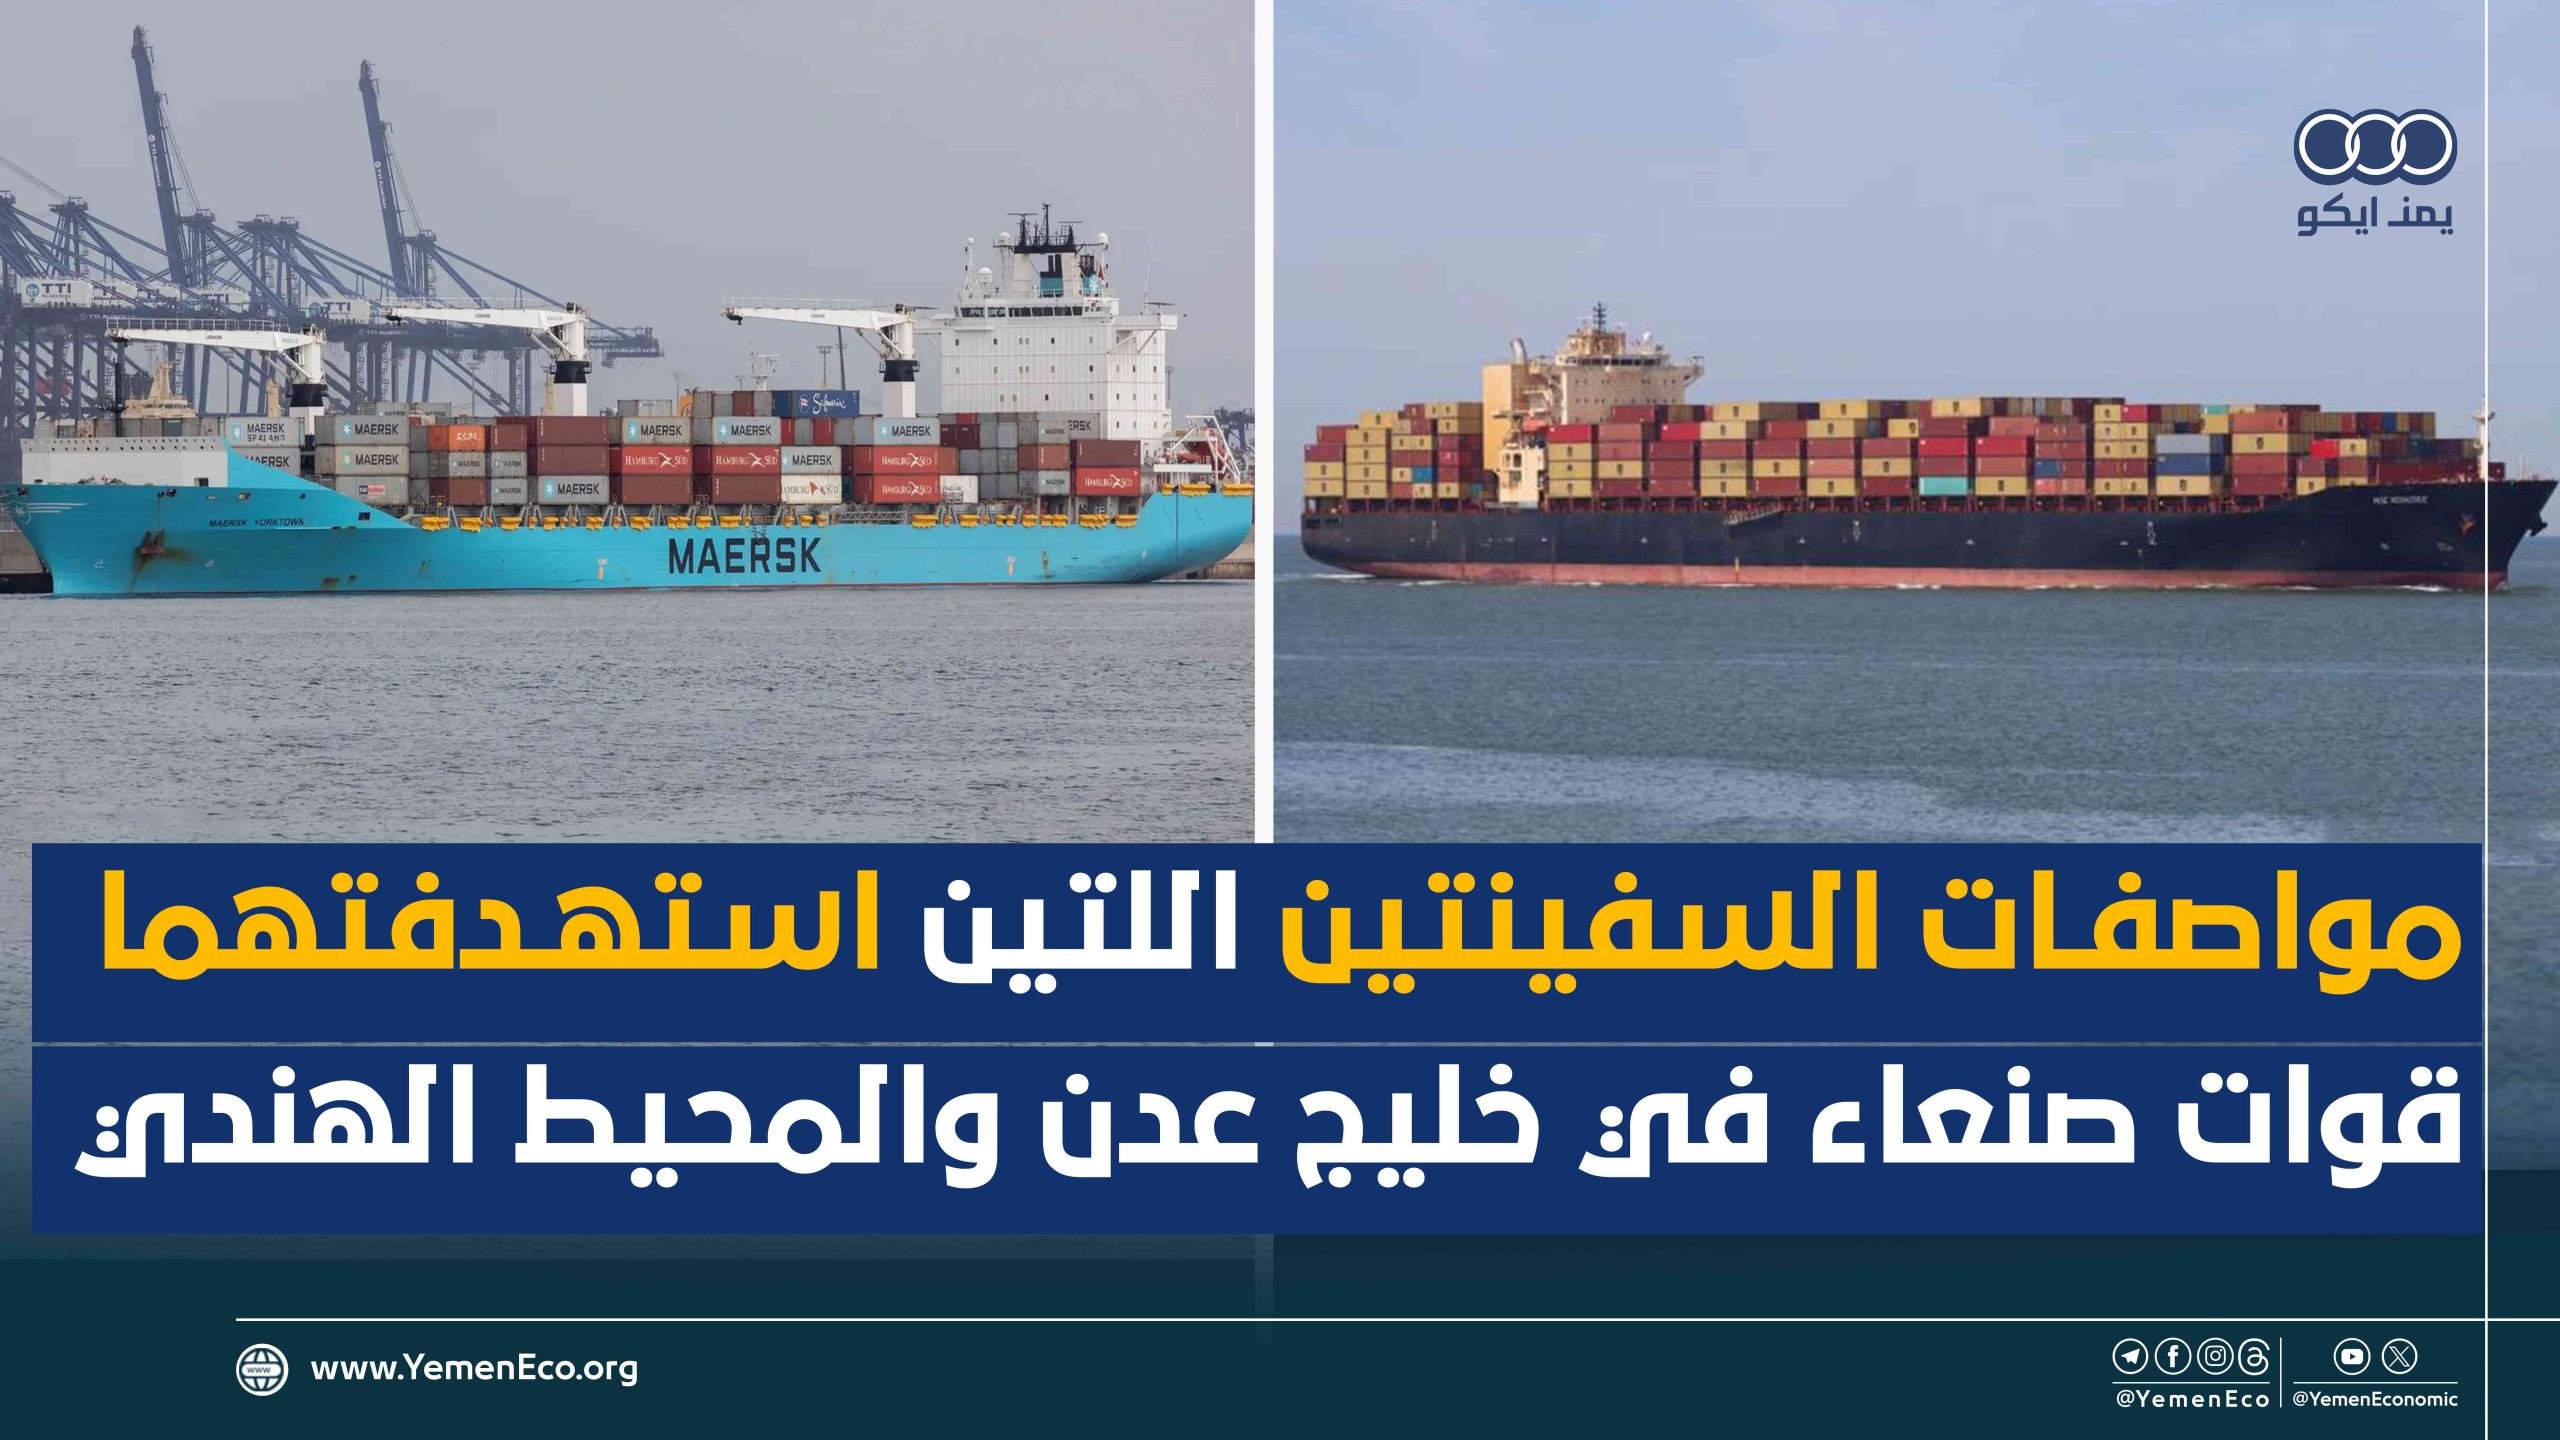 شاهد| مواصفات السفينتين اللتين استهدفتهما قوات صنعاء في خليج عدن والمحيط